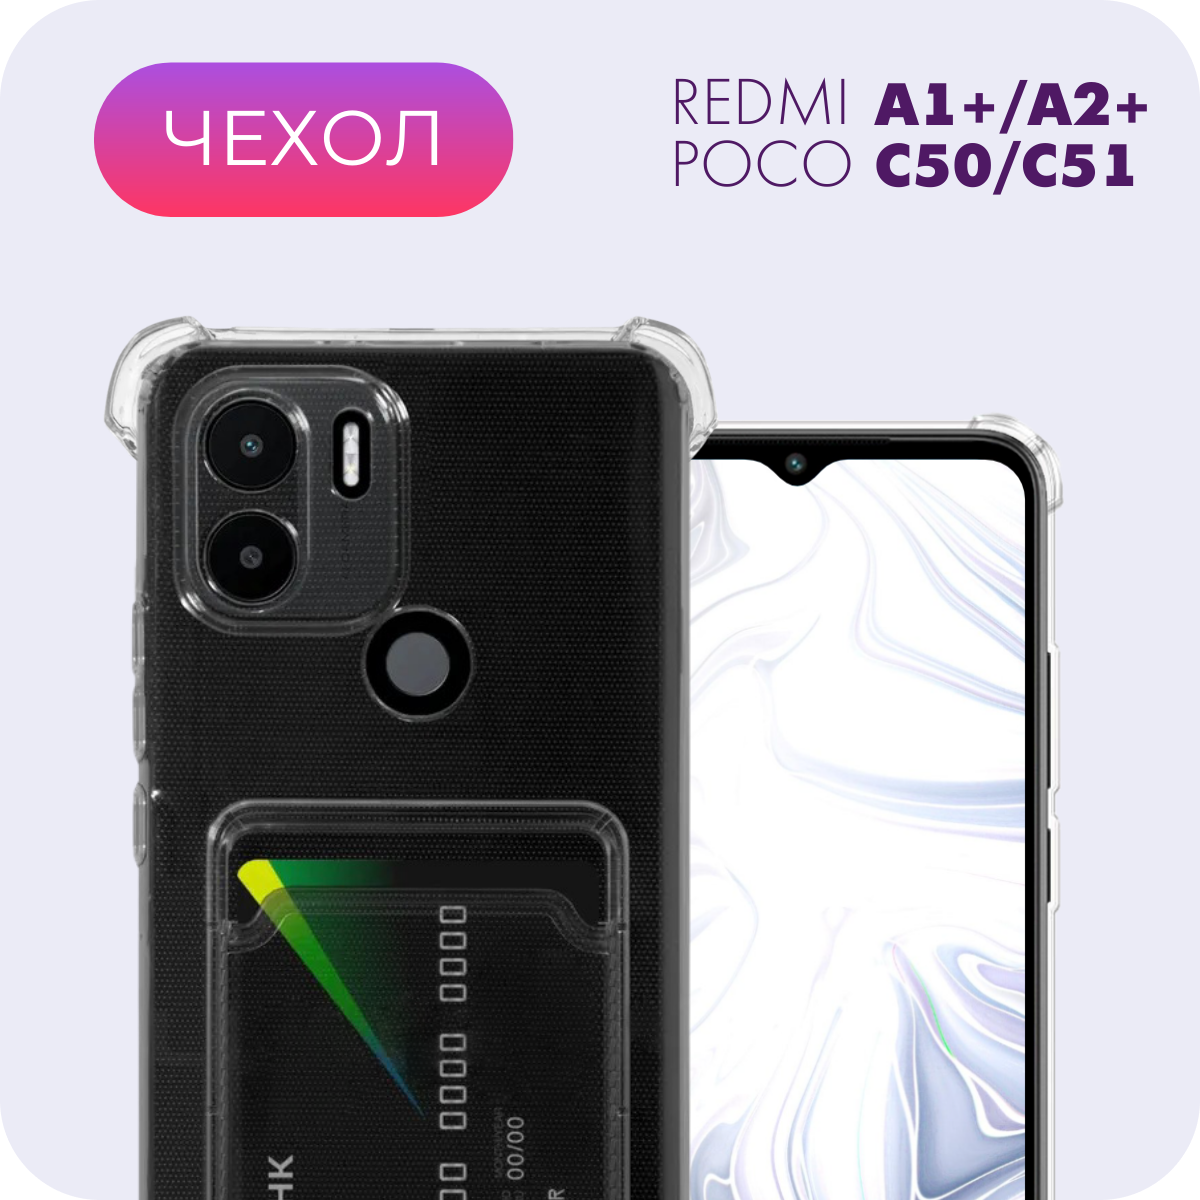 Прозрачный чехол с карманом для карт и защитой камеры №05 для Xiaomi Redmi A1+/A2+/Poco C50/C51 (Ксиоми Редми А1+/А2+/Поко Ц50/Ц51)